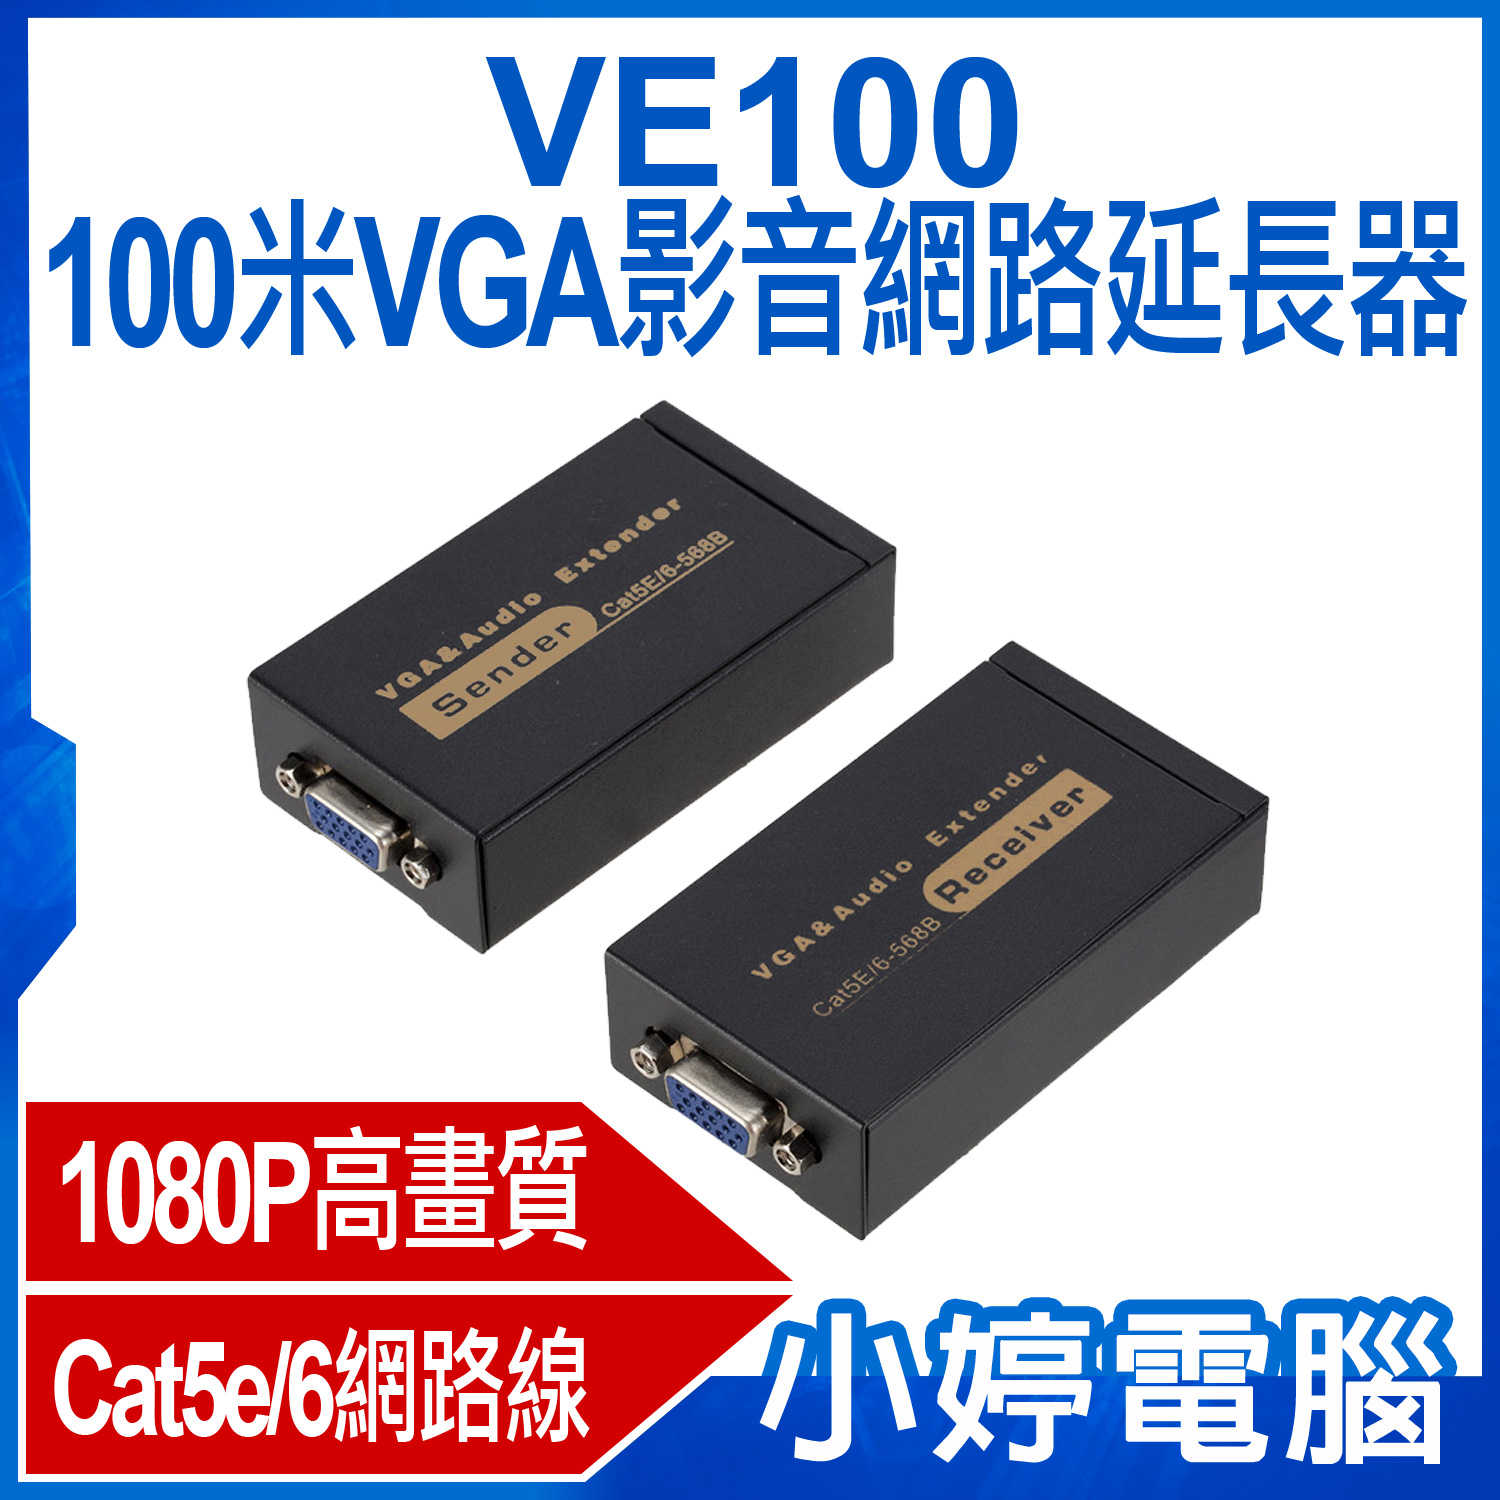 【小婷電腦】VE100 100米VGA影音網路延長器 1080P高畫質 即插即用 傳輸100米